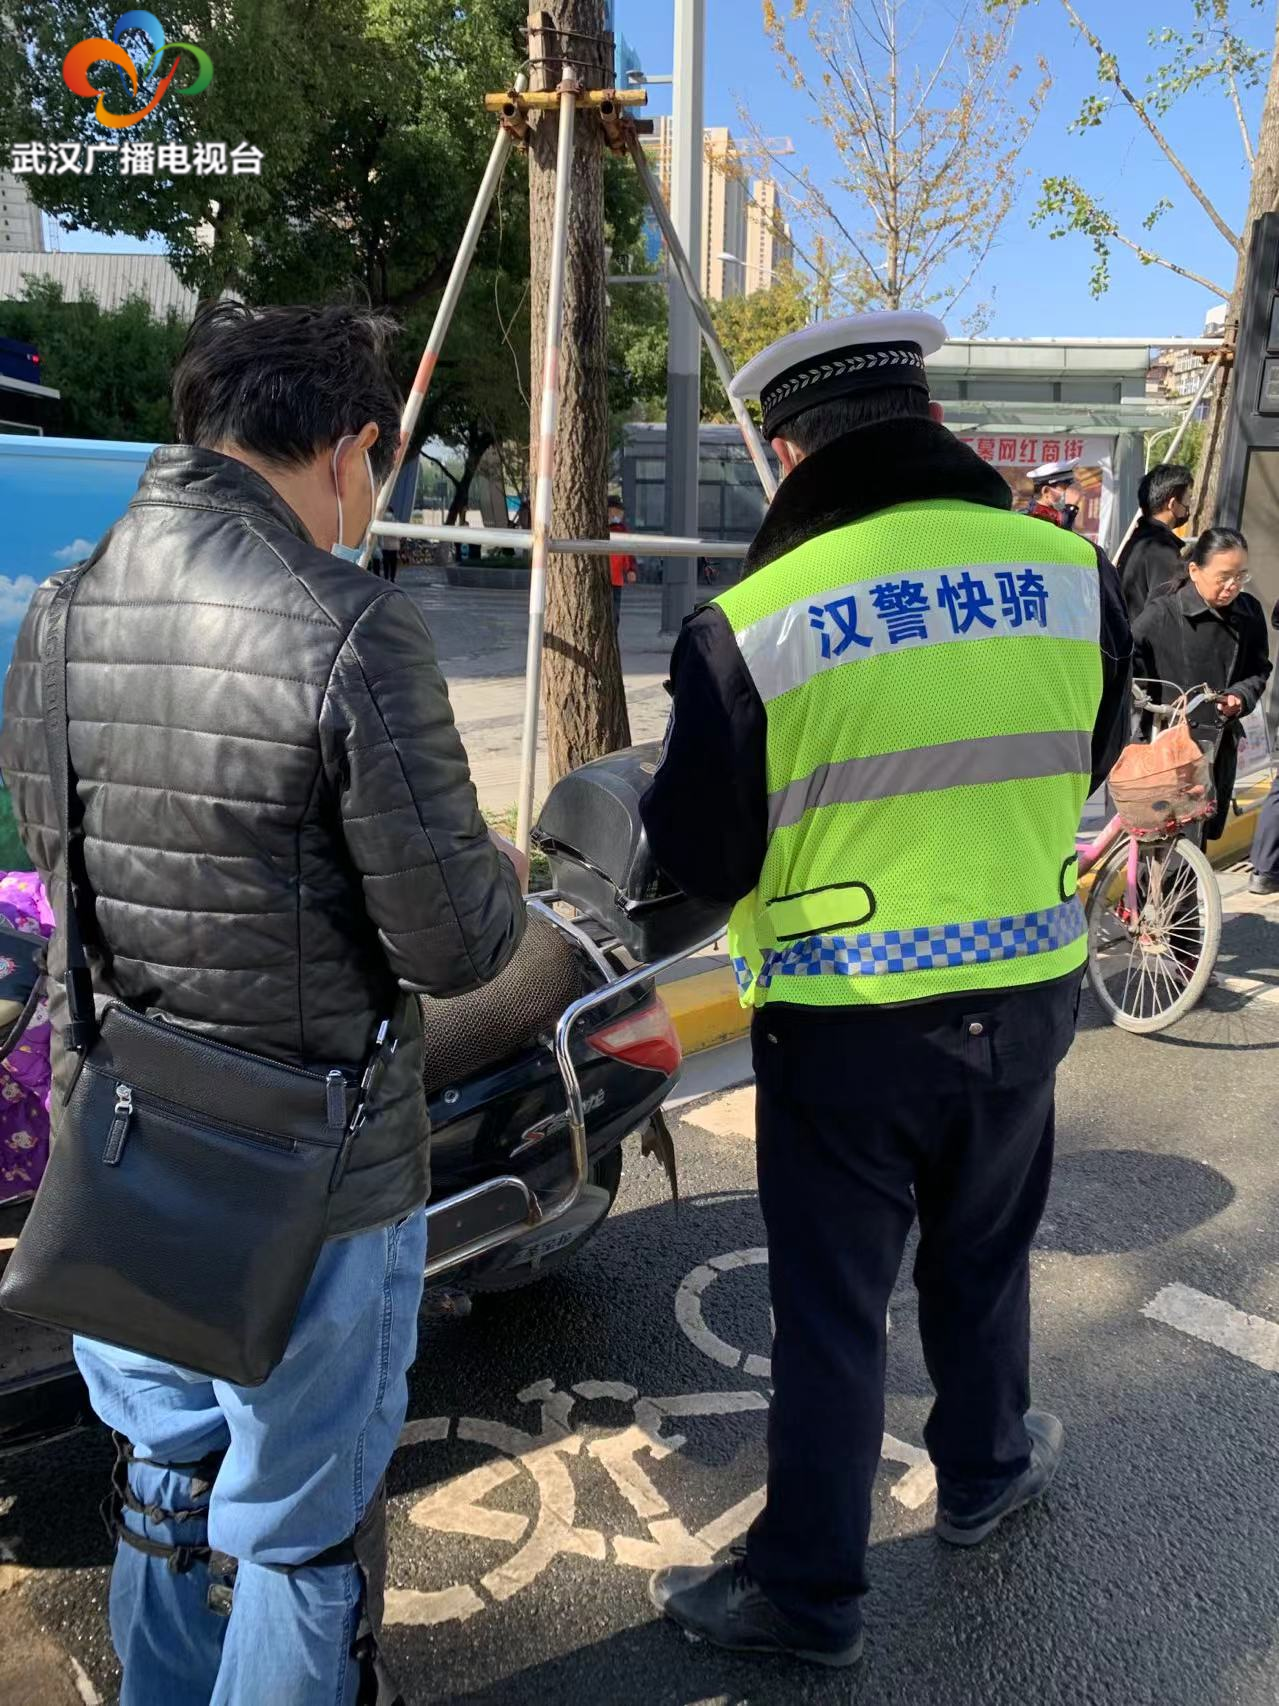 武汉交警严查电动自行车不按道行驶 当日查处6712起